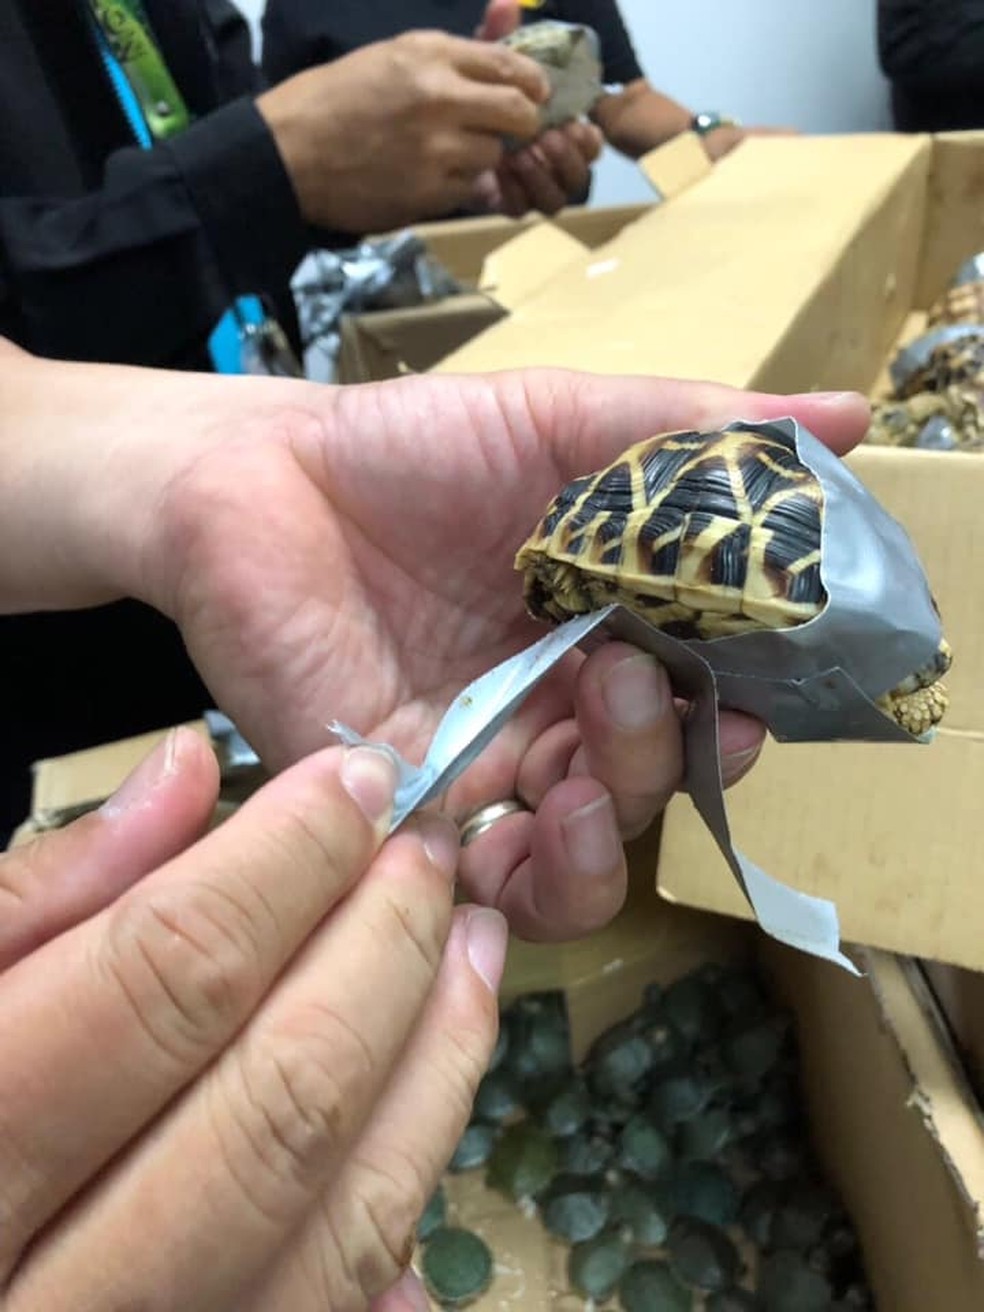 Tartarugas de espÃ©cies raras estavam abandonadas envoltas em fitas adesivas â€” Foto: Bureau of Customs Naia/Facebook